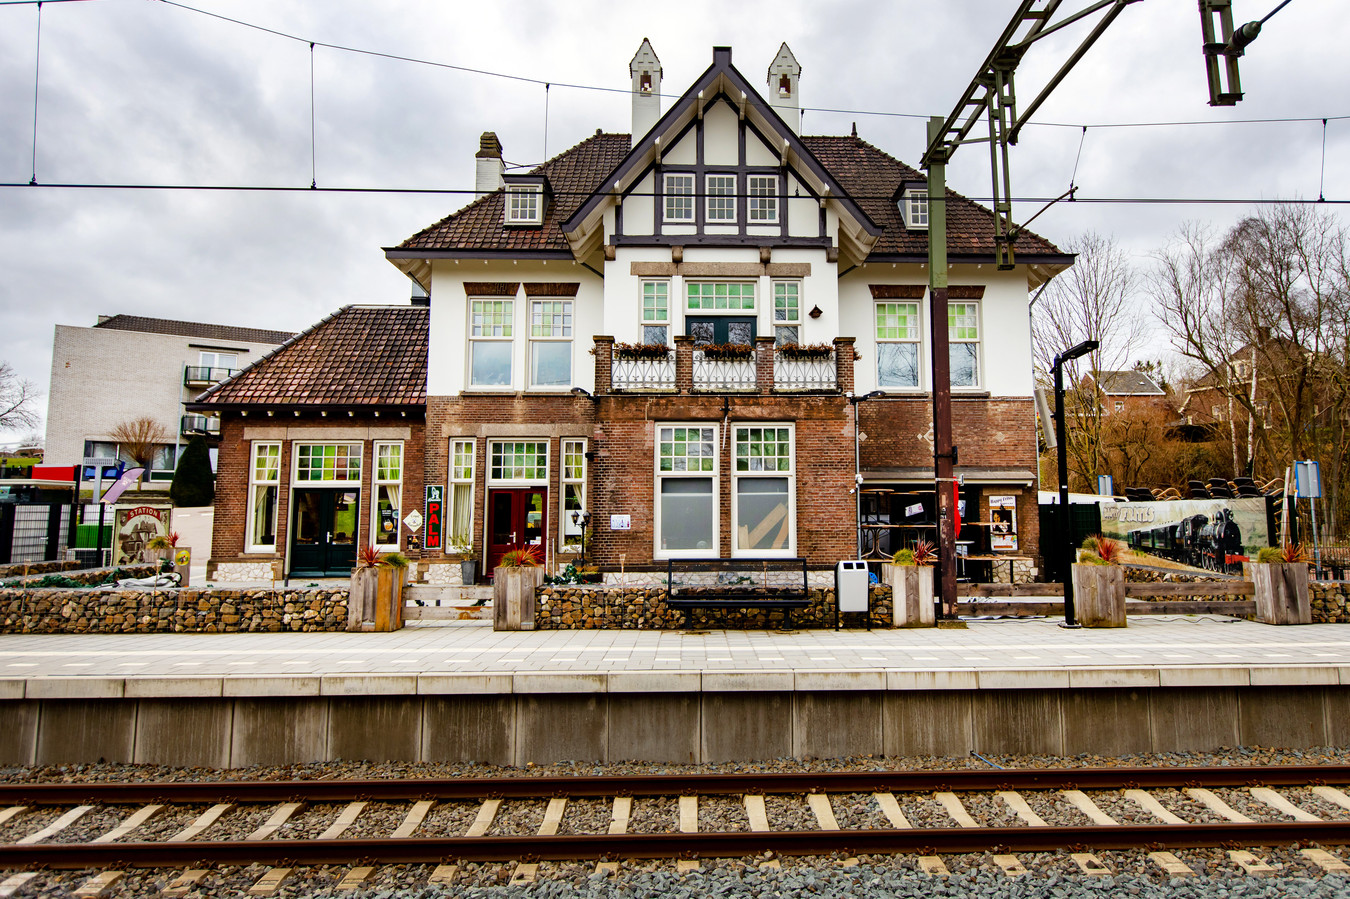 Klimmen-Ransdaal is het beste treinstation van Nederland. Het station dankt de hoge score mede aan het monumentale stationsgebouw uit 1913 van architect George van Heukelom